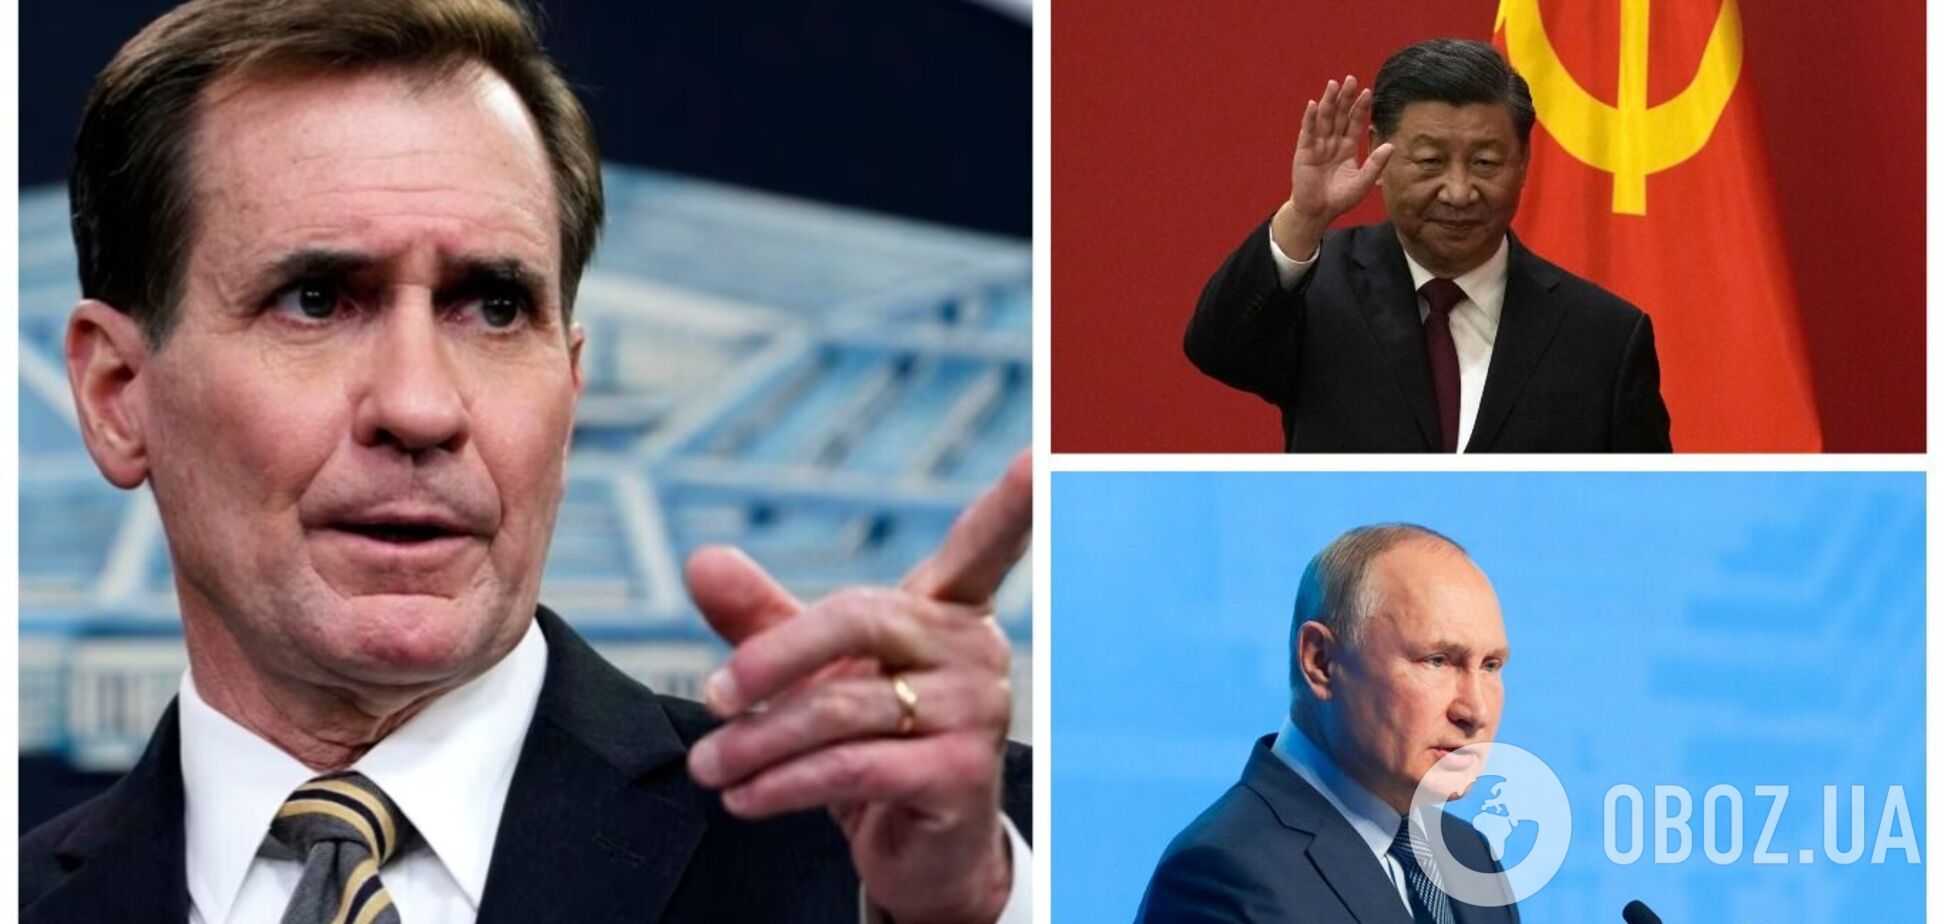 Китаю доведеться зробити вибір і добре подумати, чи варто підтримувати вбивства Путіна, – Кірбі